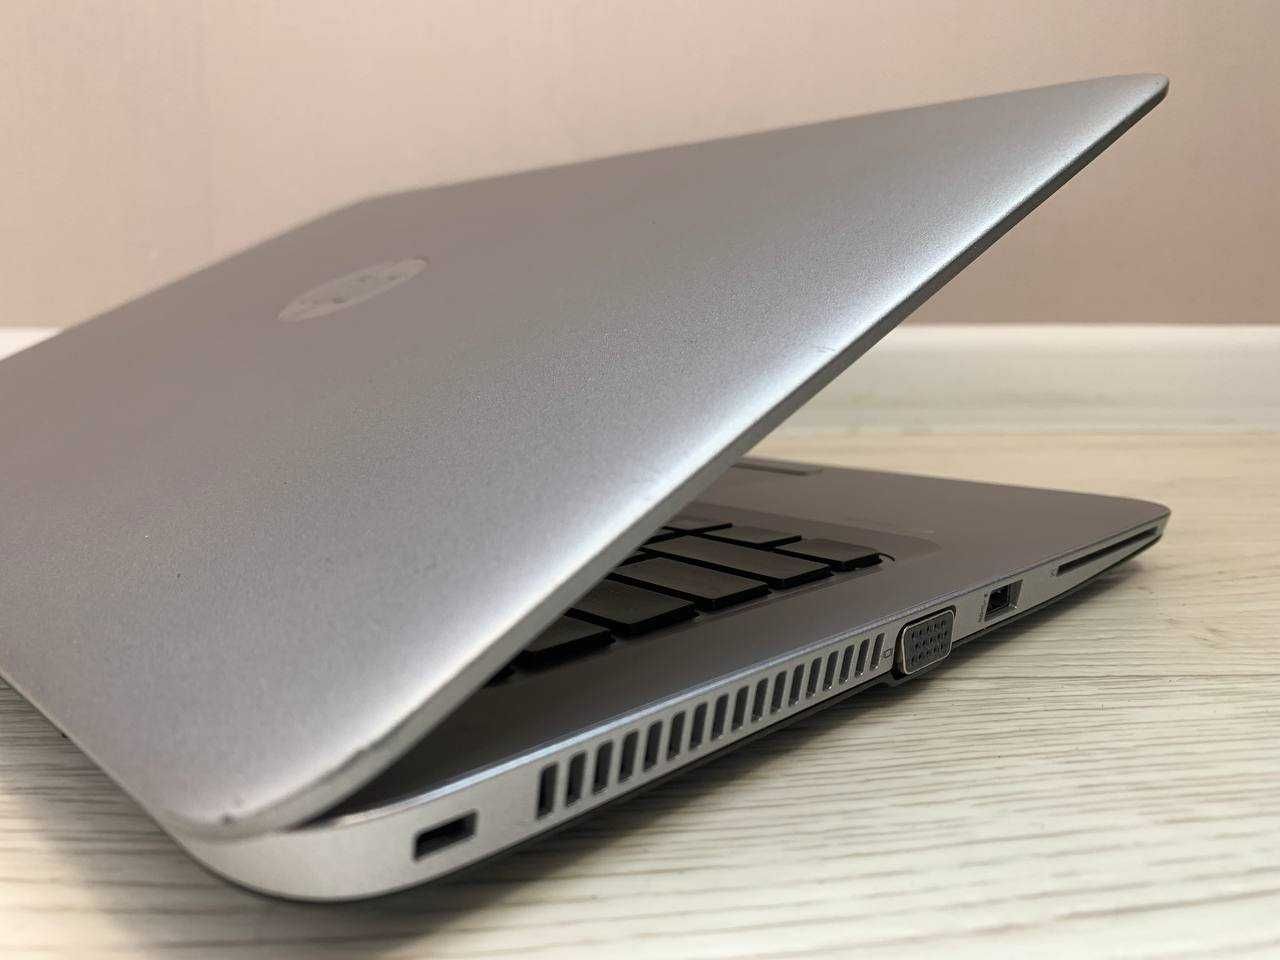 HP EliteBook MT42 A8-9600B 4GB DDR3 160GB SSD 14" Full HD